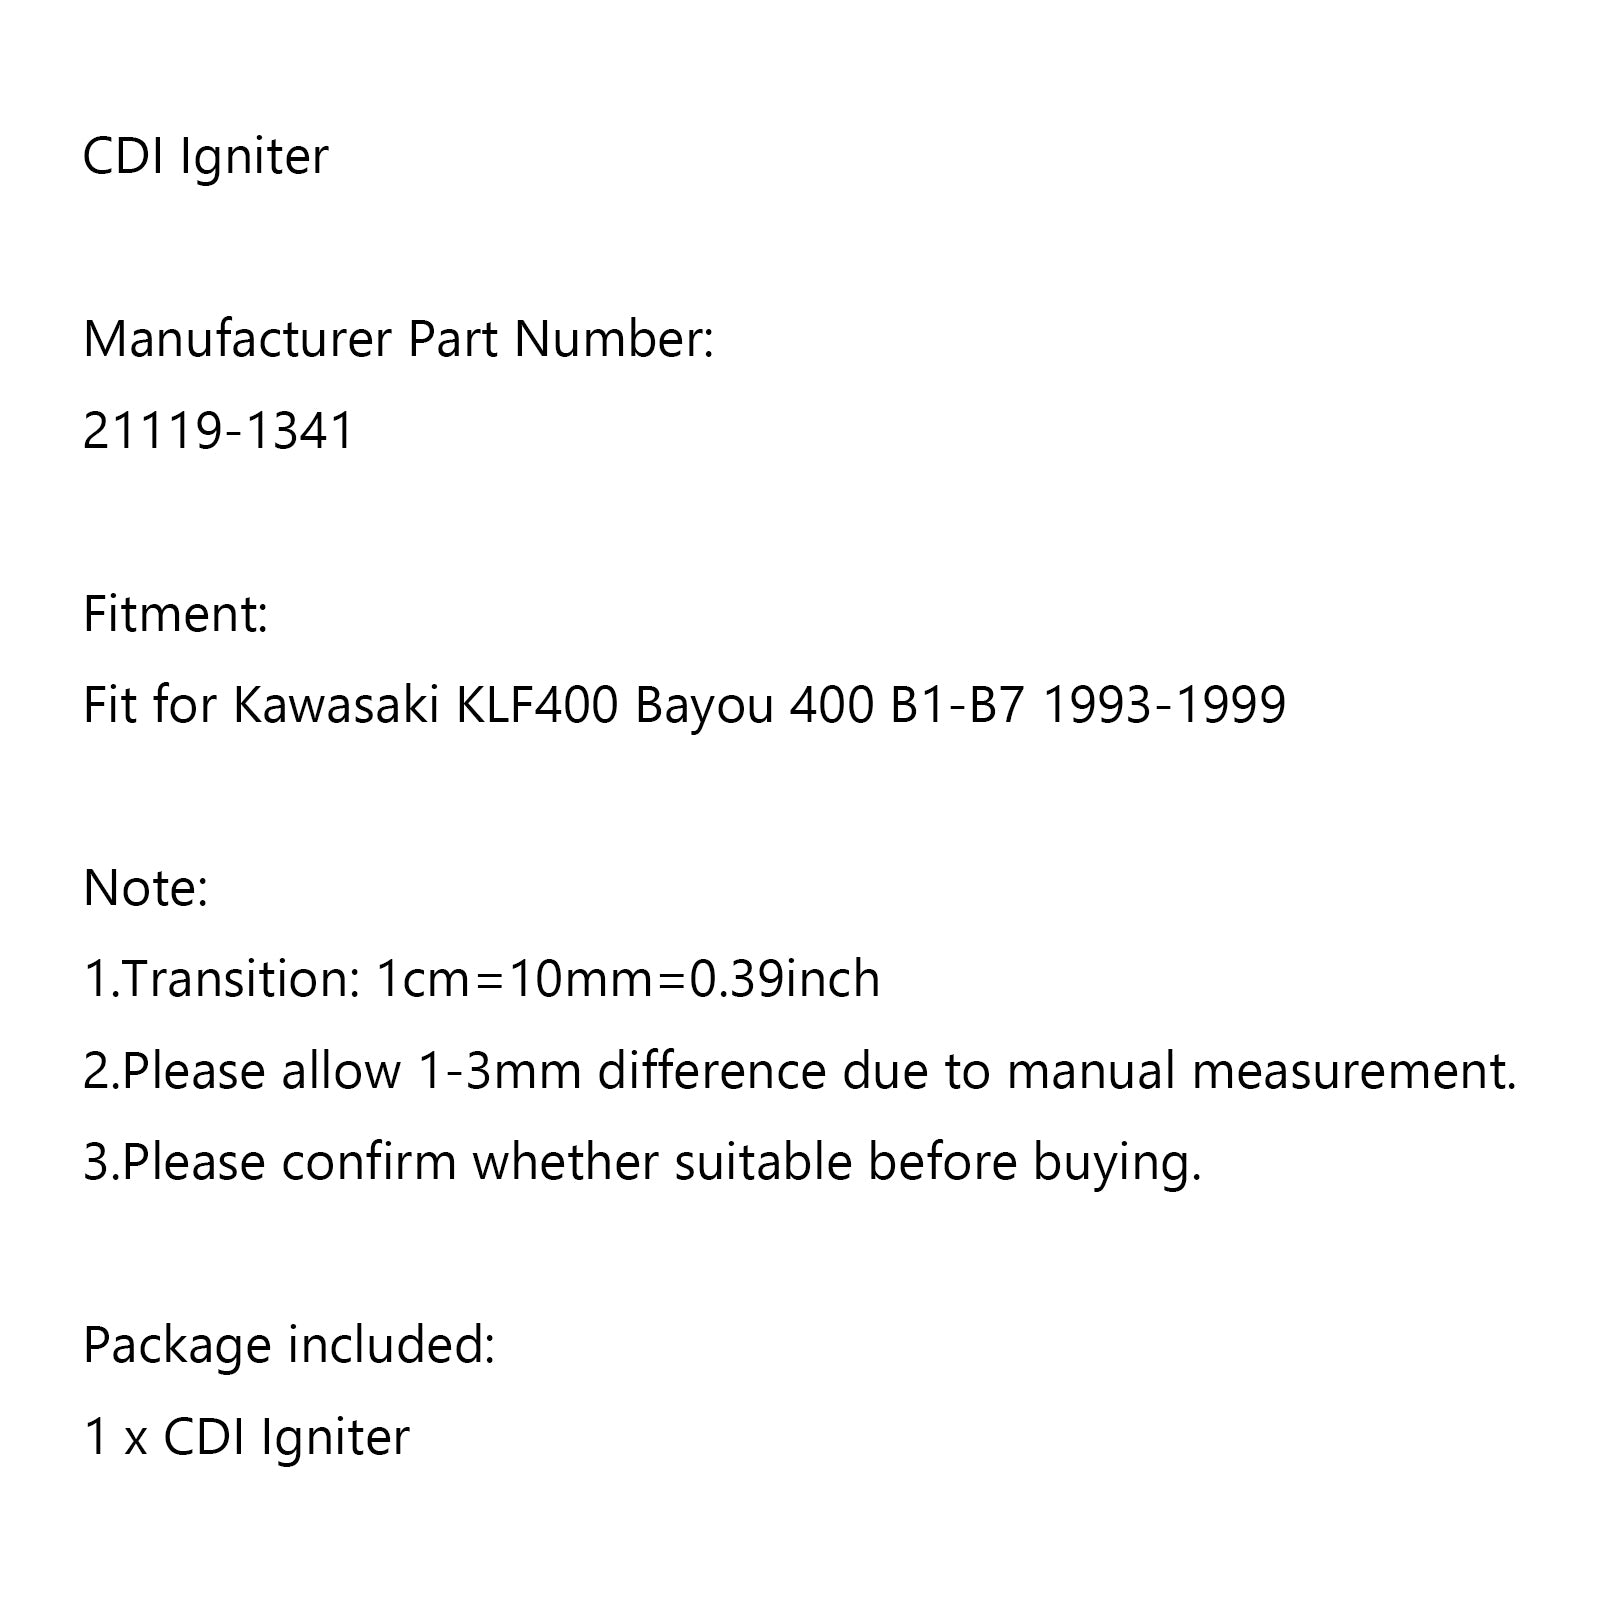 CDI Igniter fit for Kawasaki KLF400 Bayou 400 B1-B7 1993-1999 21119-1341